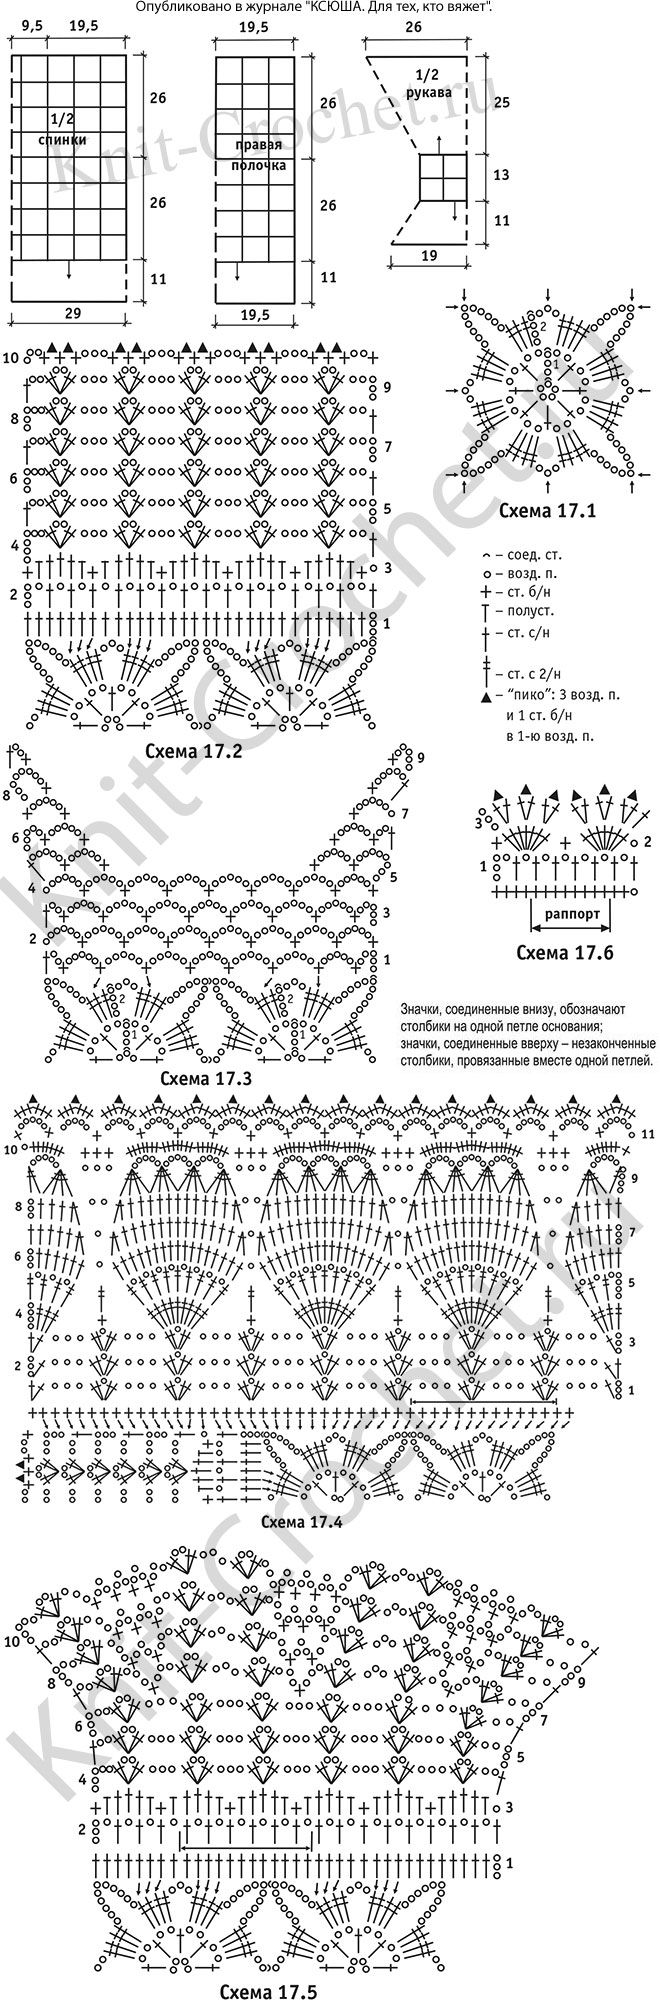 Выкройка, схемы узоров с описанием вязания крючком женского жакета из ажурных мотивов размера 52-54.